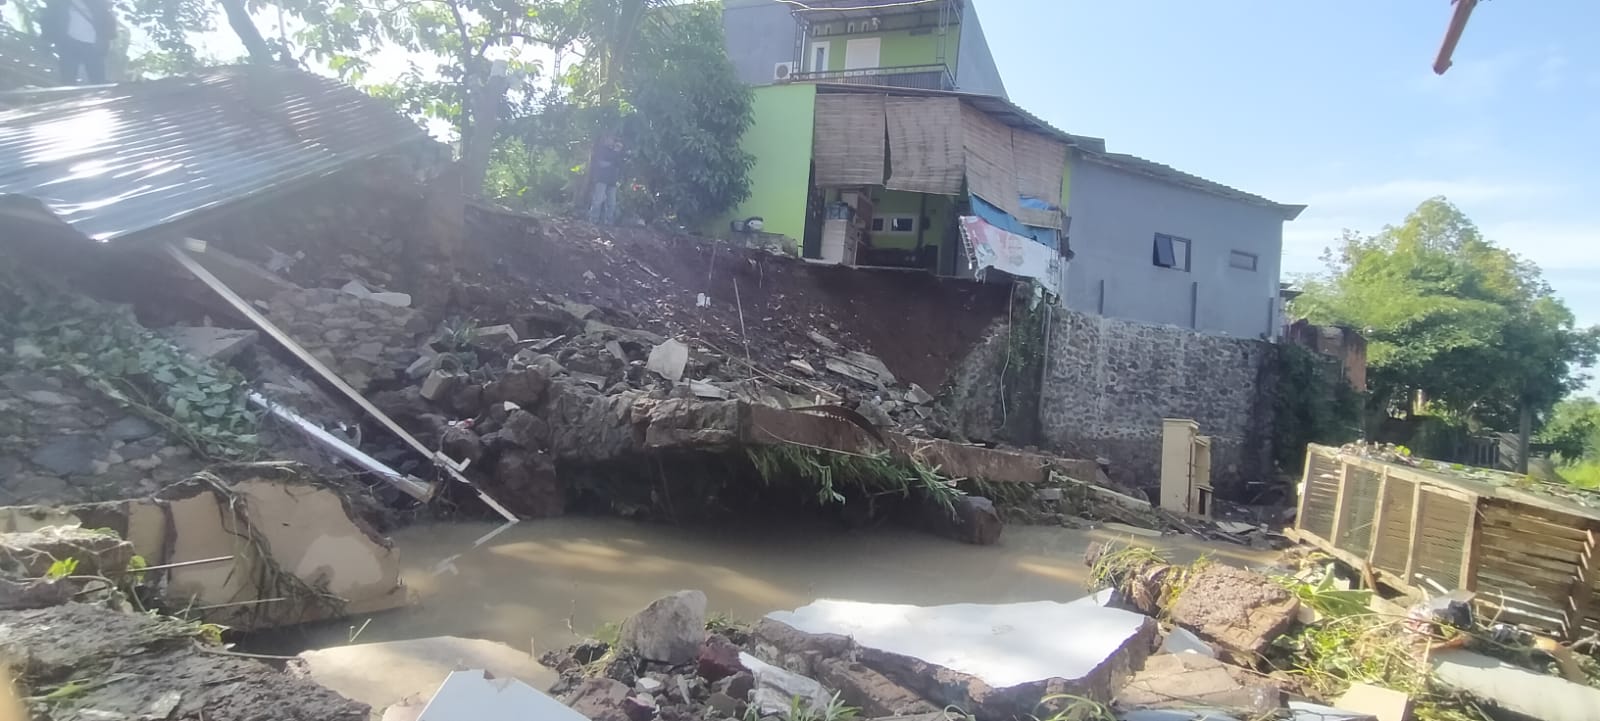 Bendungan Irigasi Jebol, 15 Rumah di Desa Nagrak Kabupaten Cianjur Diterjang Banjir Bandang, Tiga Ru/Literasi News/Nabiel purwanda